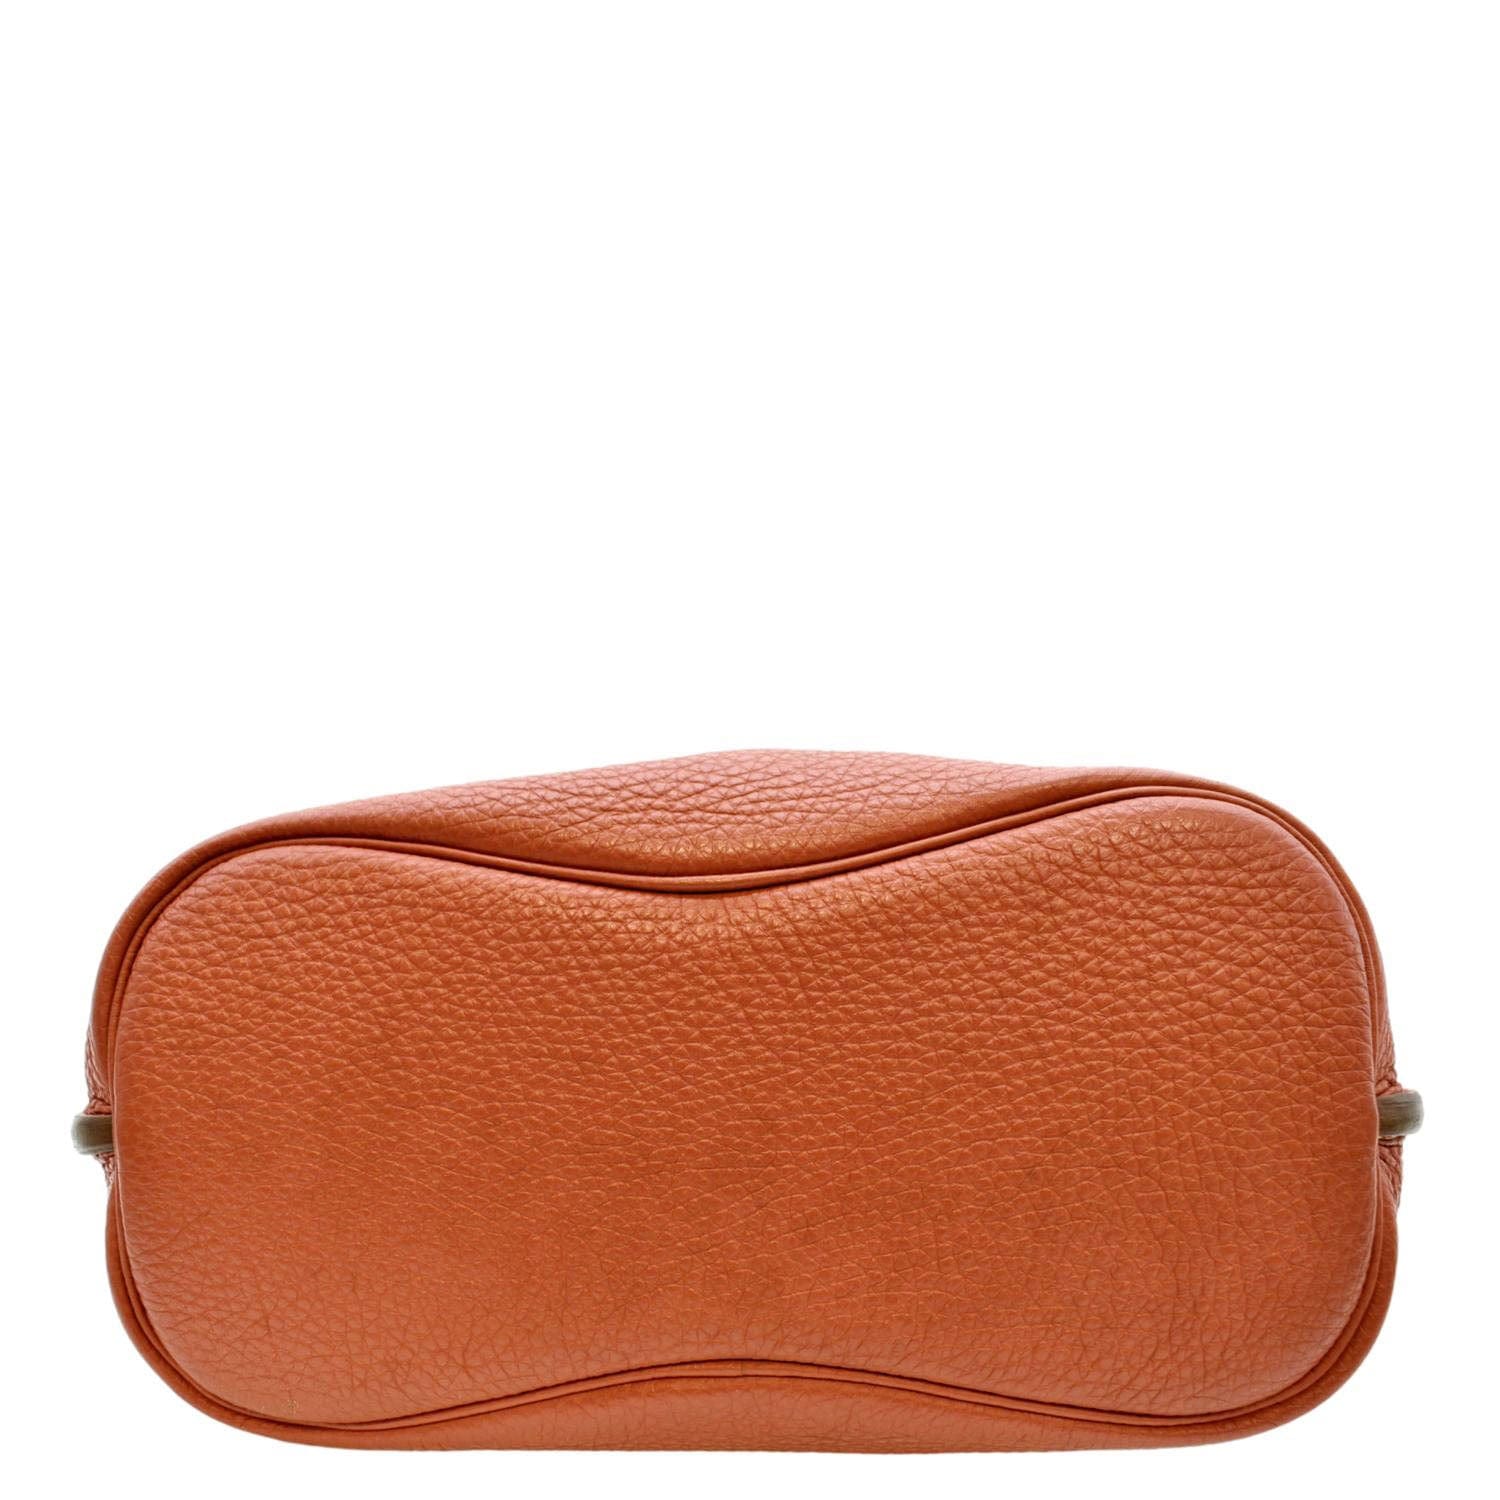 HERMES Sport Kelly MM Shoulder Bag Silver Hardware Togo leather Orange Used